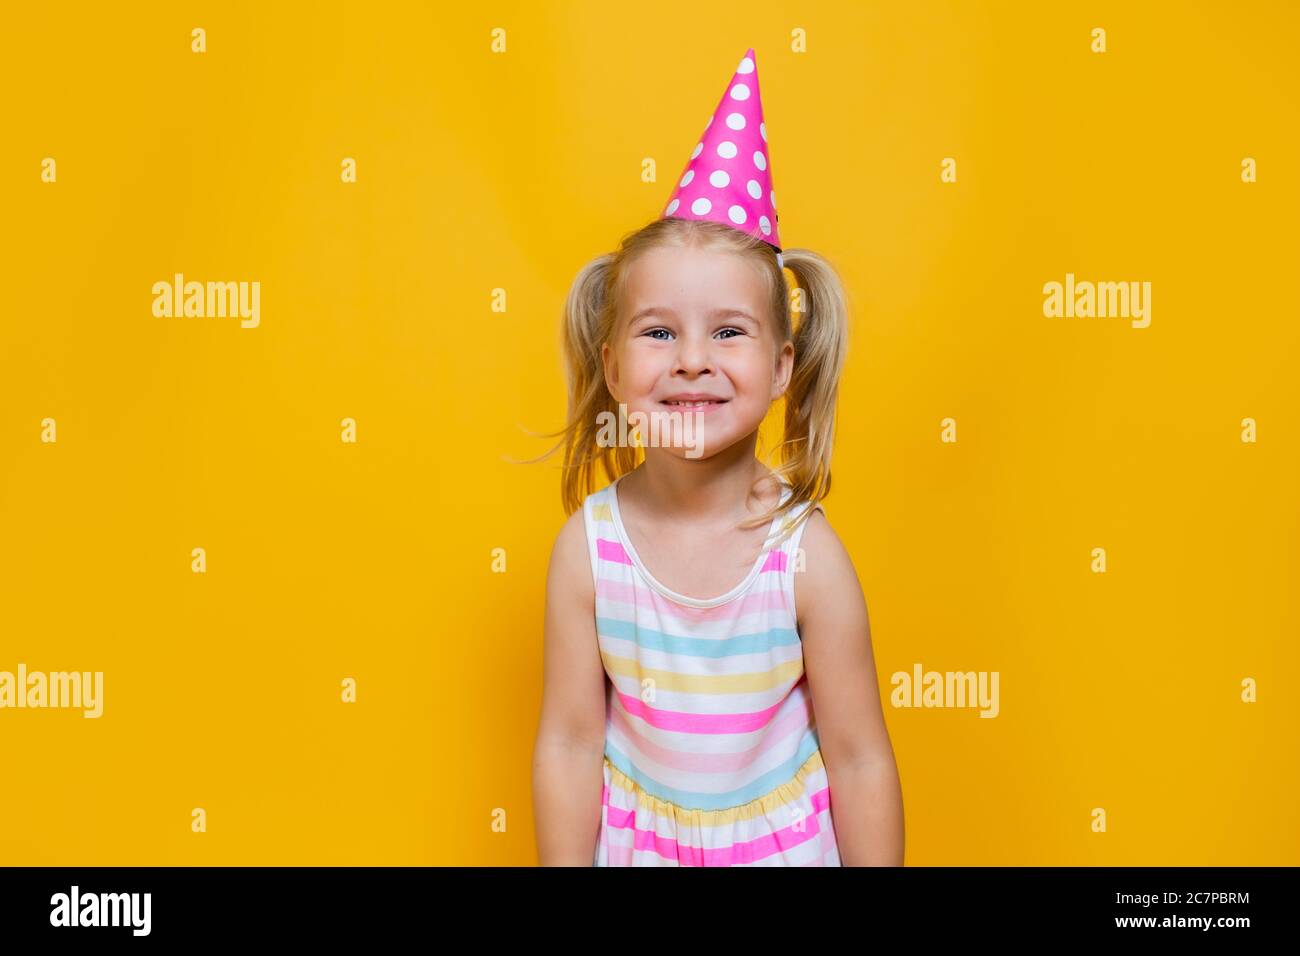 Joyeux anniversaire enfant fille avec deux contes de ponytales en capuchon rose sur fond jaune coloré. Banque D'Images